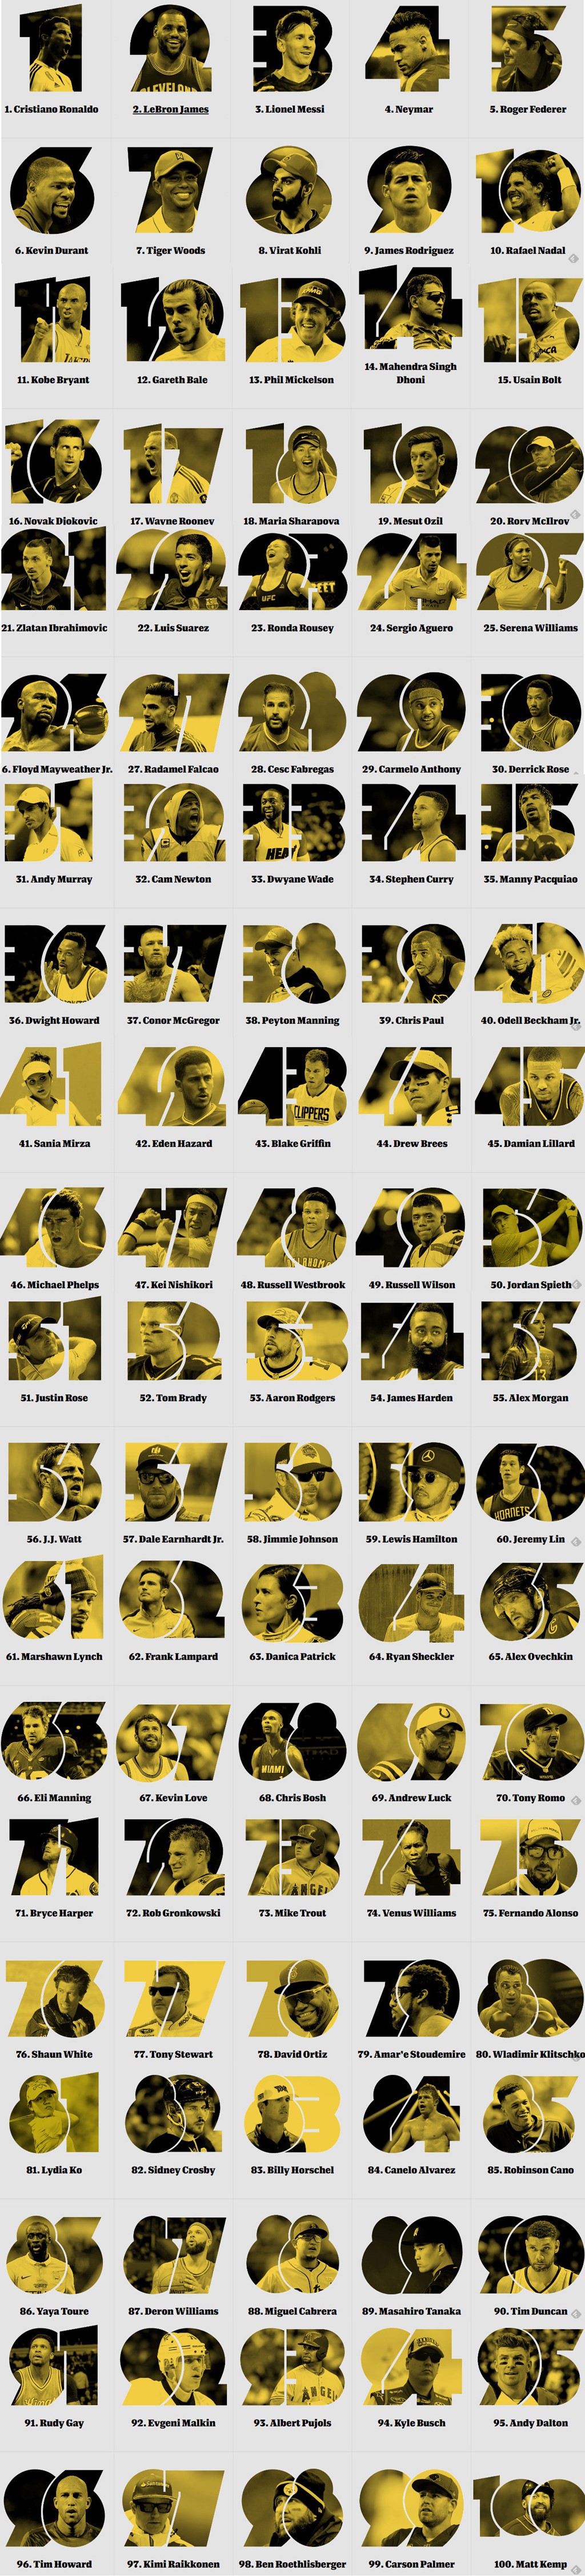 100 gương mặt thể thao nổi tiếng nhất thế giới theo ESPN.